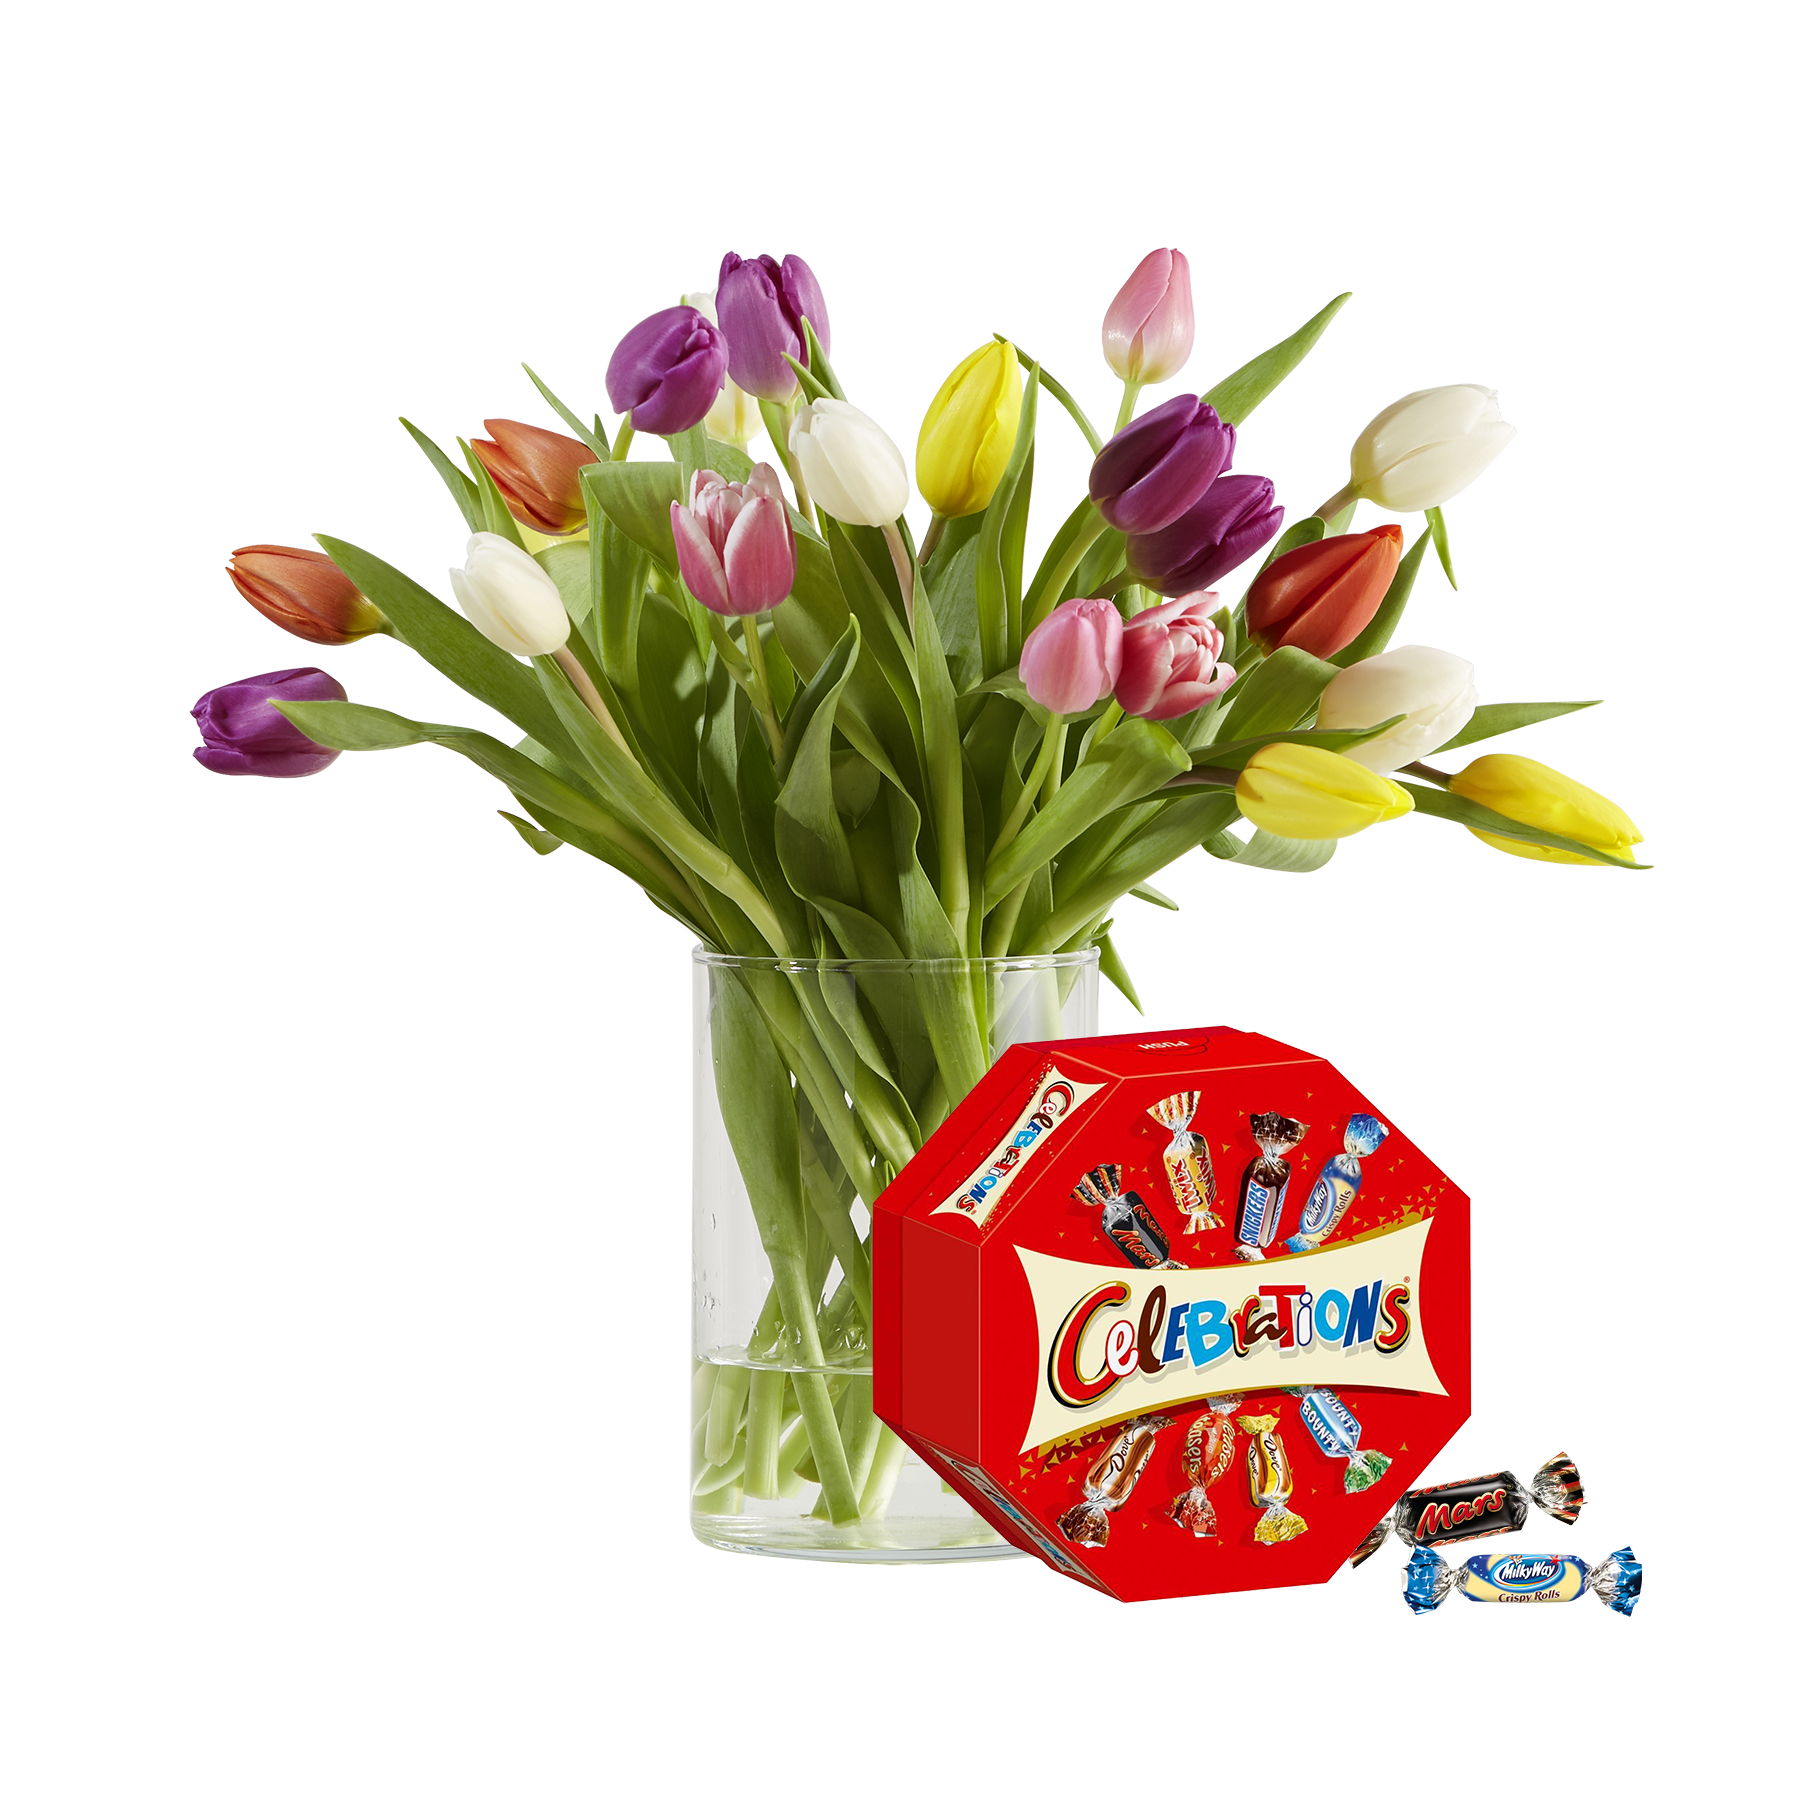 20 Stiele Bunte Tulpen mit Celebrations von  bestellen